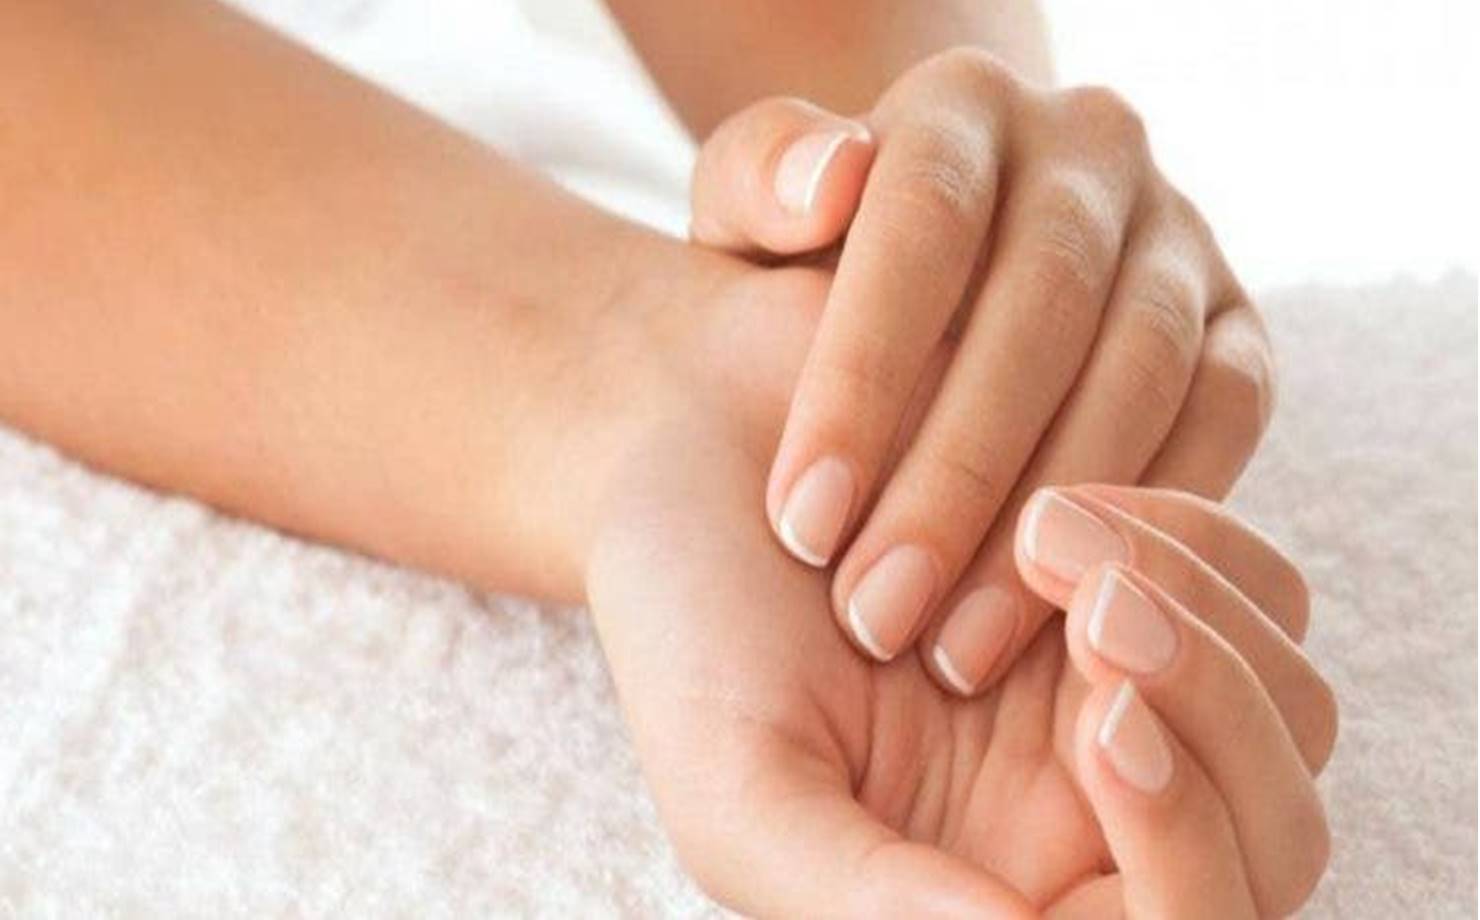 Aprenda algumas dicas naturais para retardar o envelhecimento das mãos